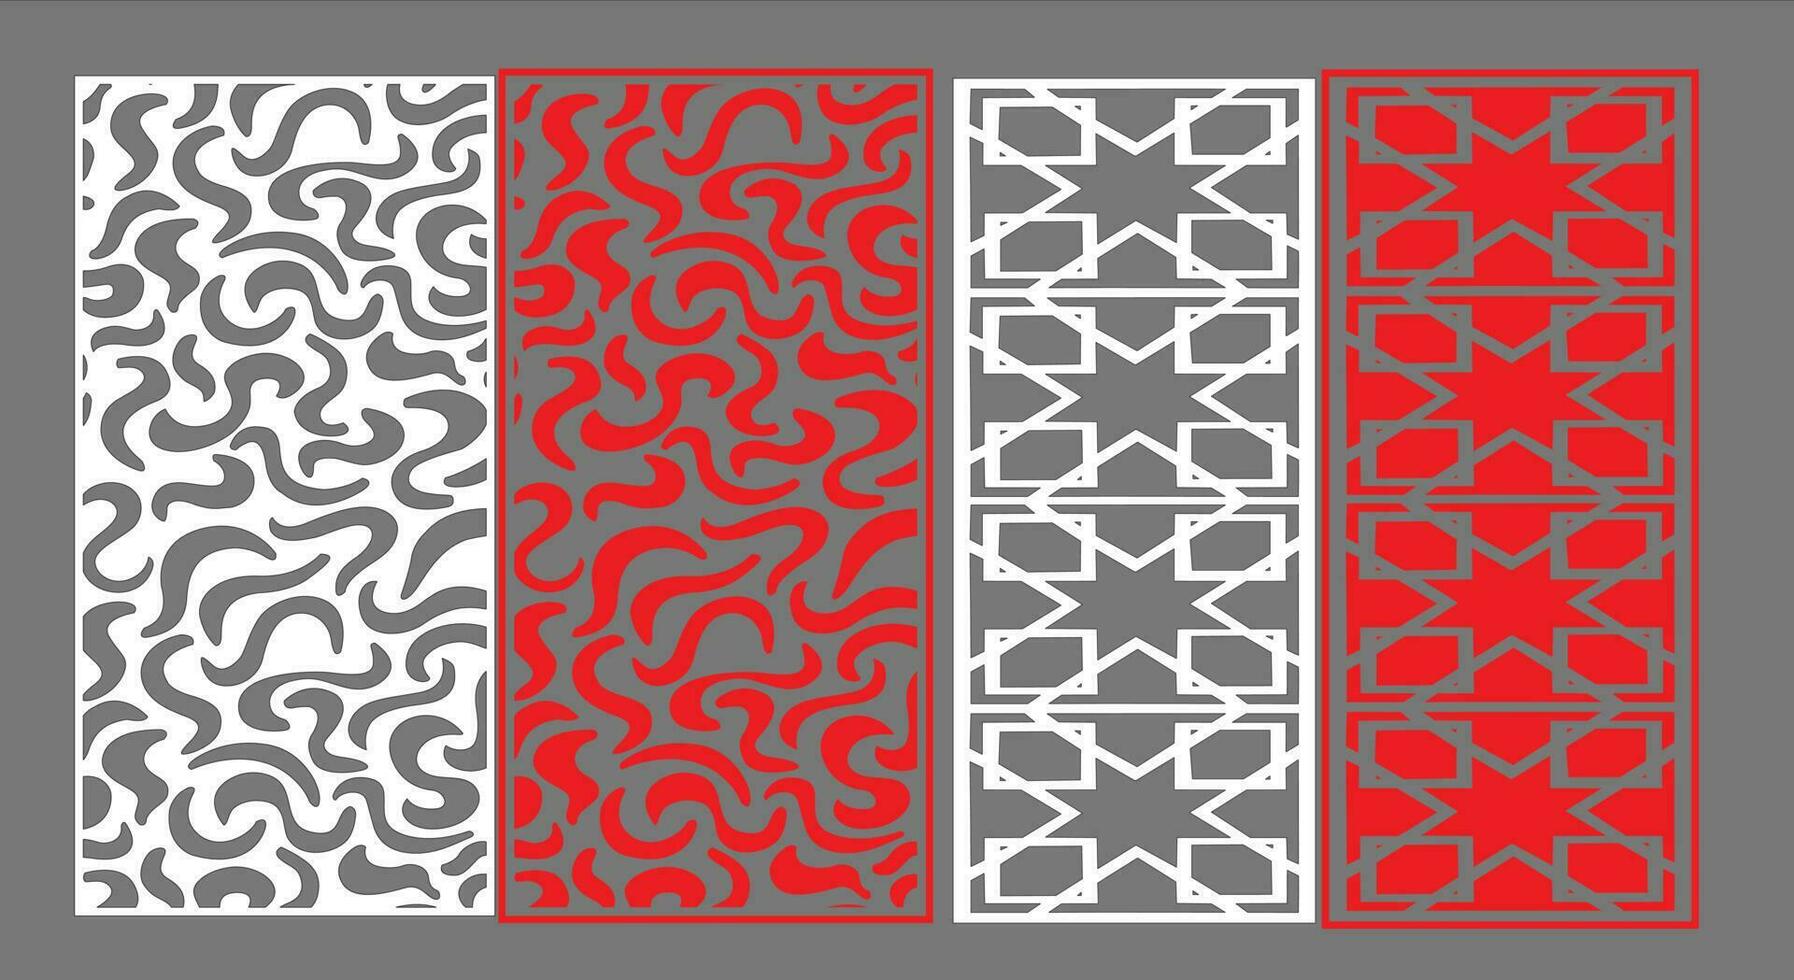 decoratief muur panelen reeks jali ontwerp cnc patroon, laser snijdend patroon, router cnccutting.jali laser besnoeiing decoratief paneel reeks met kant patroon. vector